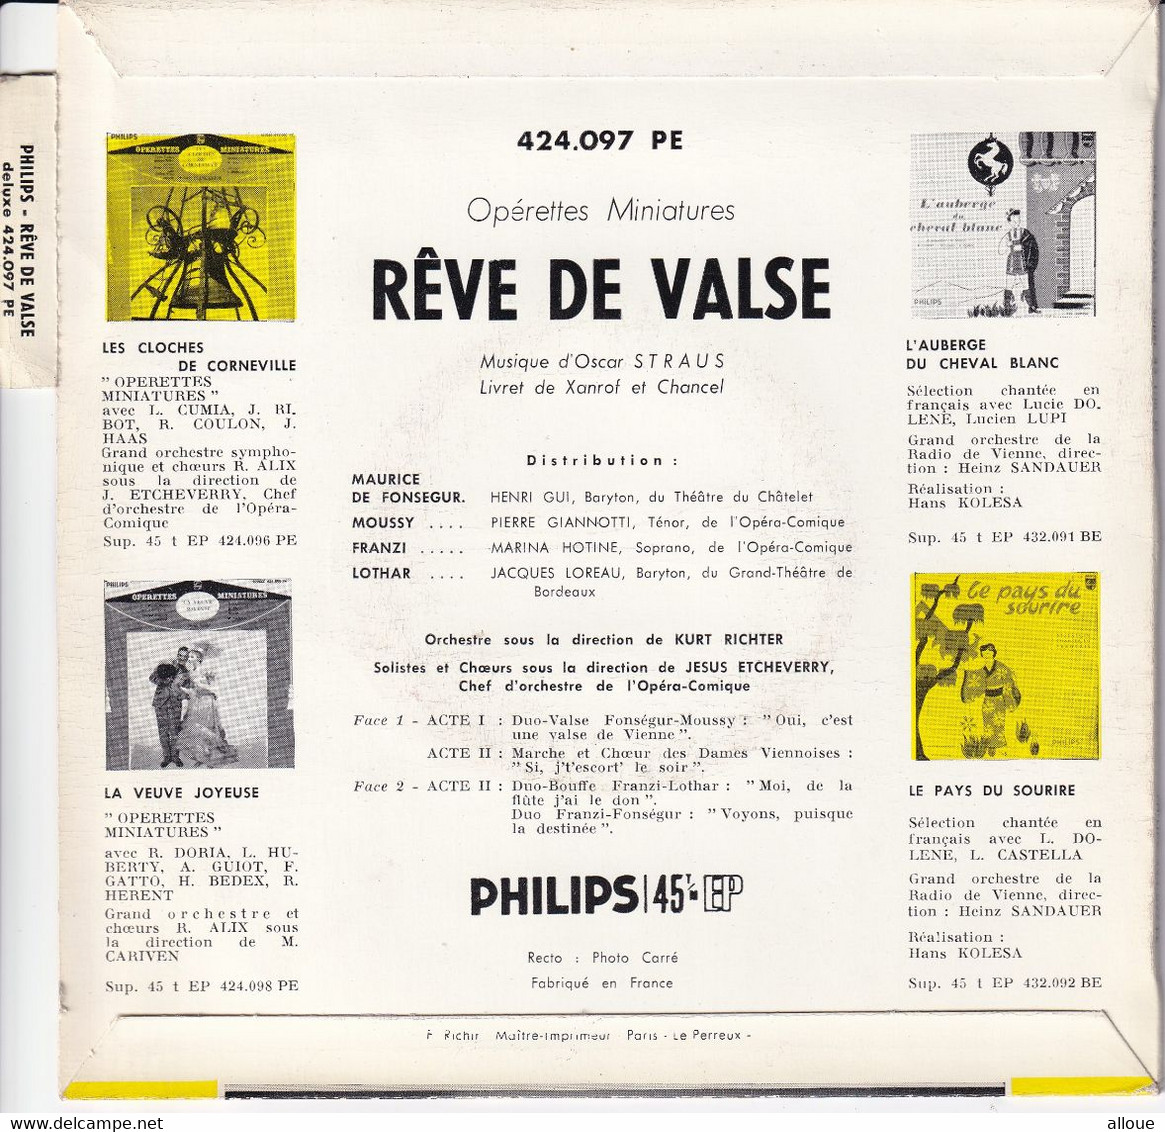 REVE DE VALSE - FR EP OPERETTES MINIATURES - OSCAR STRAUS - Opera